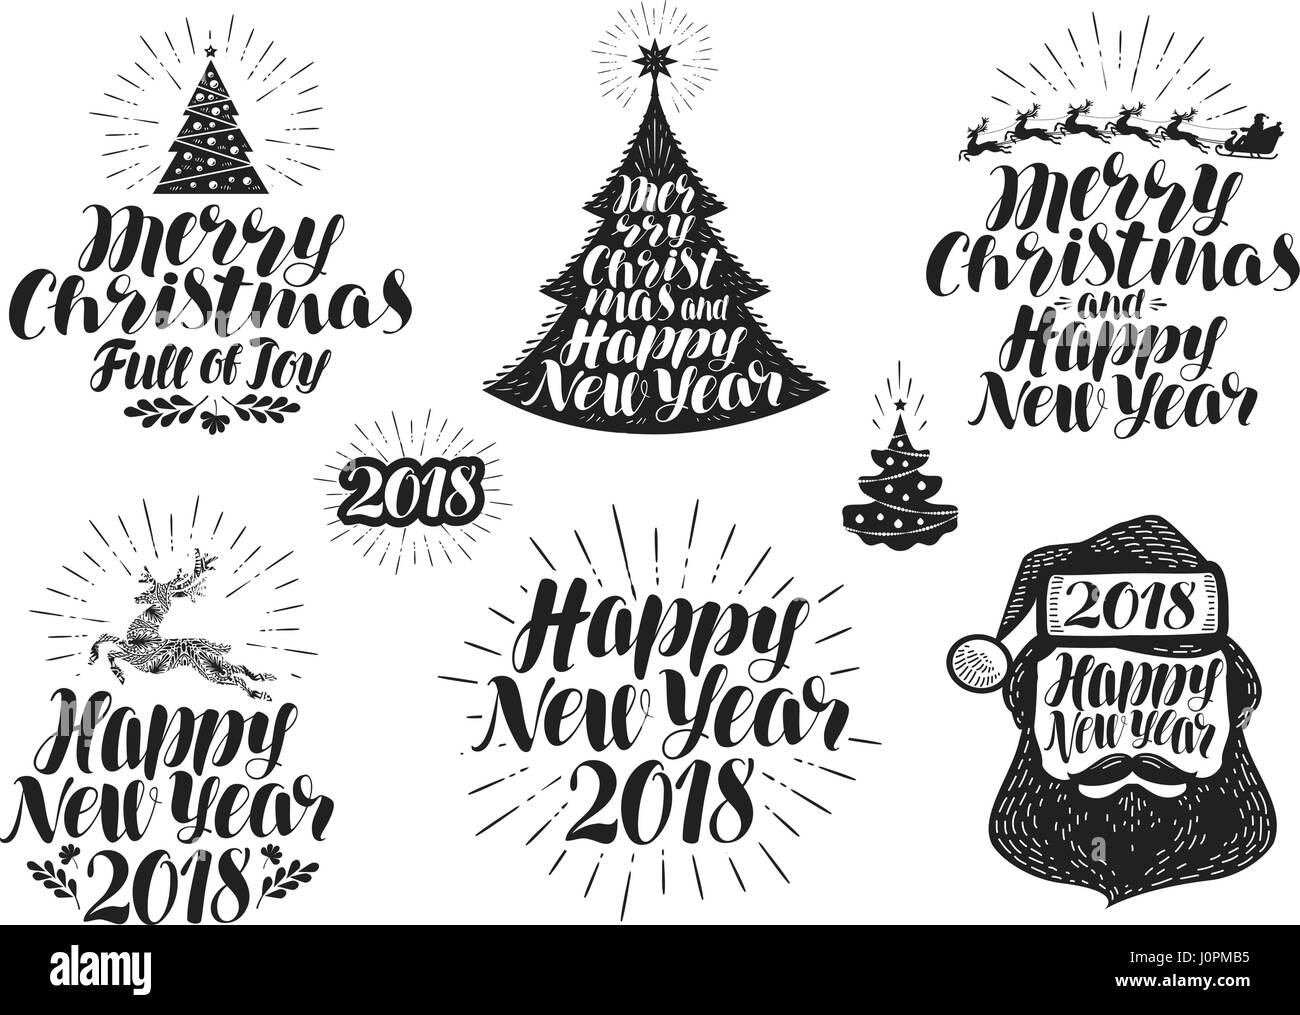 Frohe Weihnachten Und Happy New Year Beschriftungssatz Weihnachten Urlaub Symbol Oder Logo Schriftzug Vektor Illustration Stock Vektorgrafik Alamy